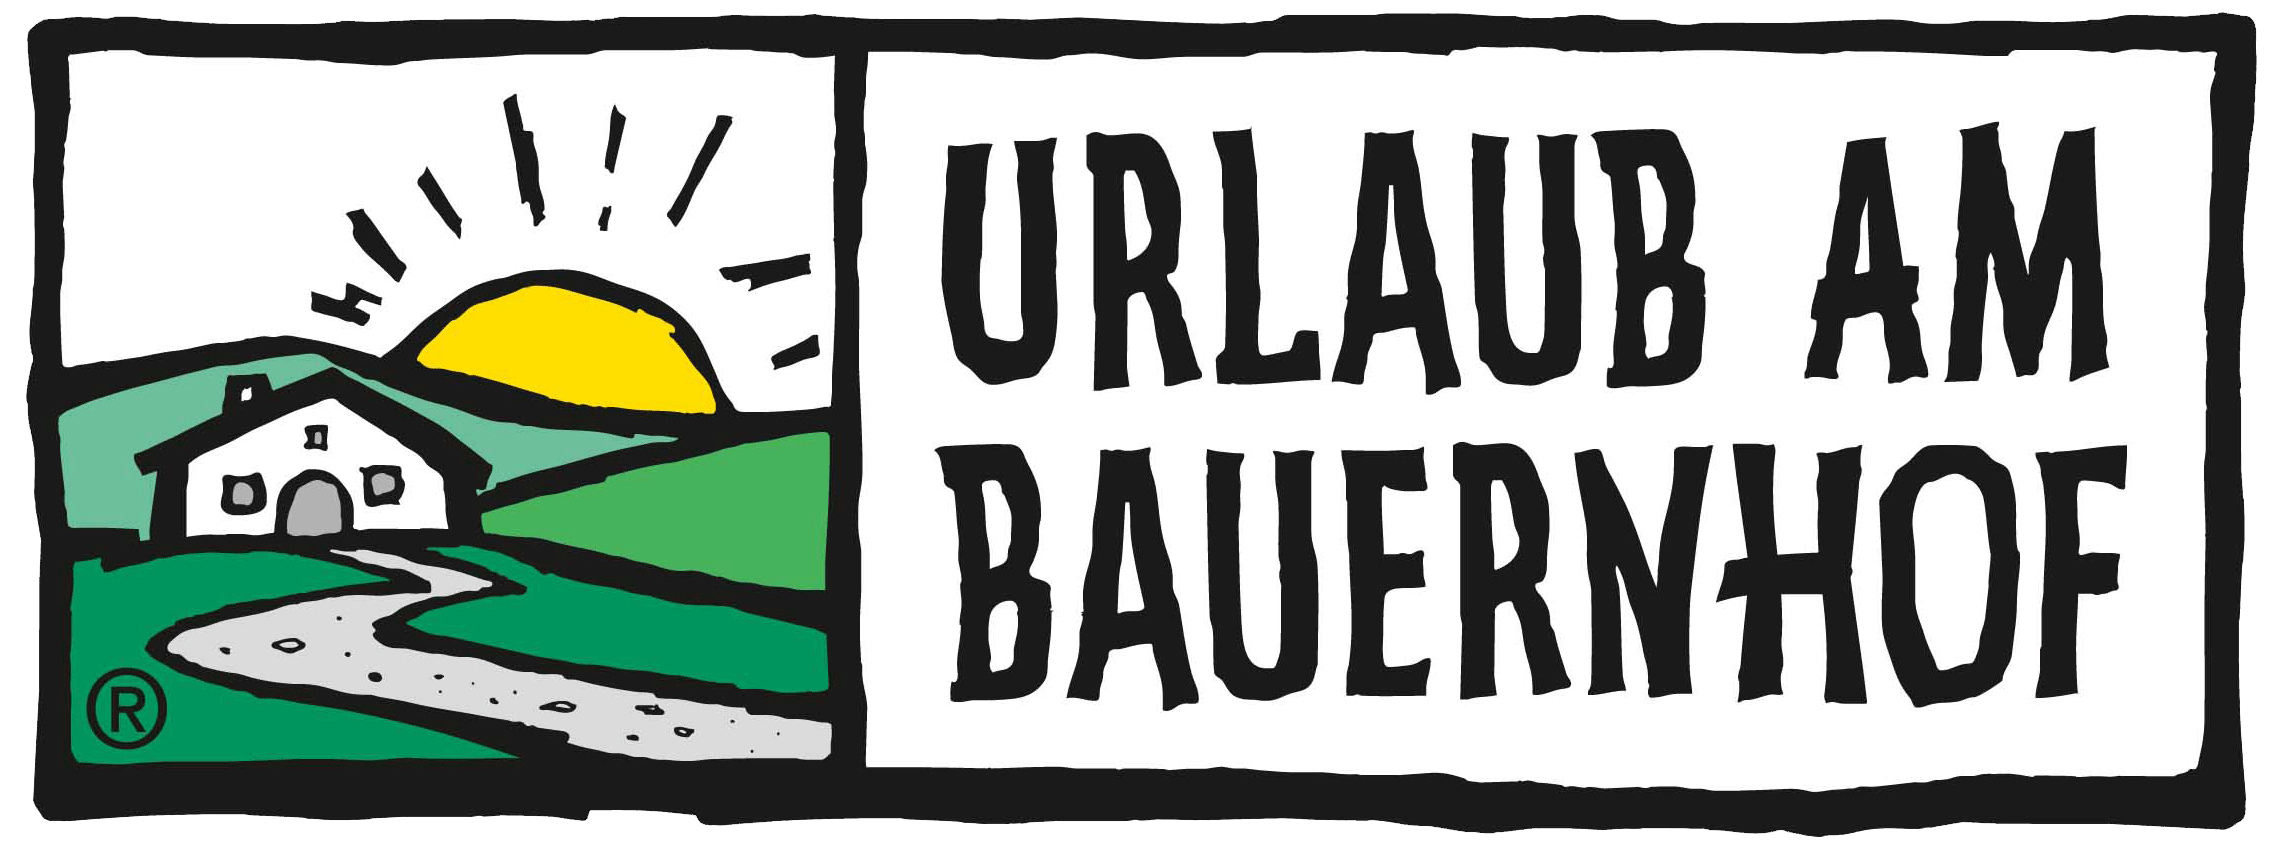 urlaub-am-bauernhof-logo